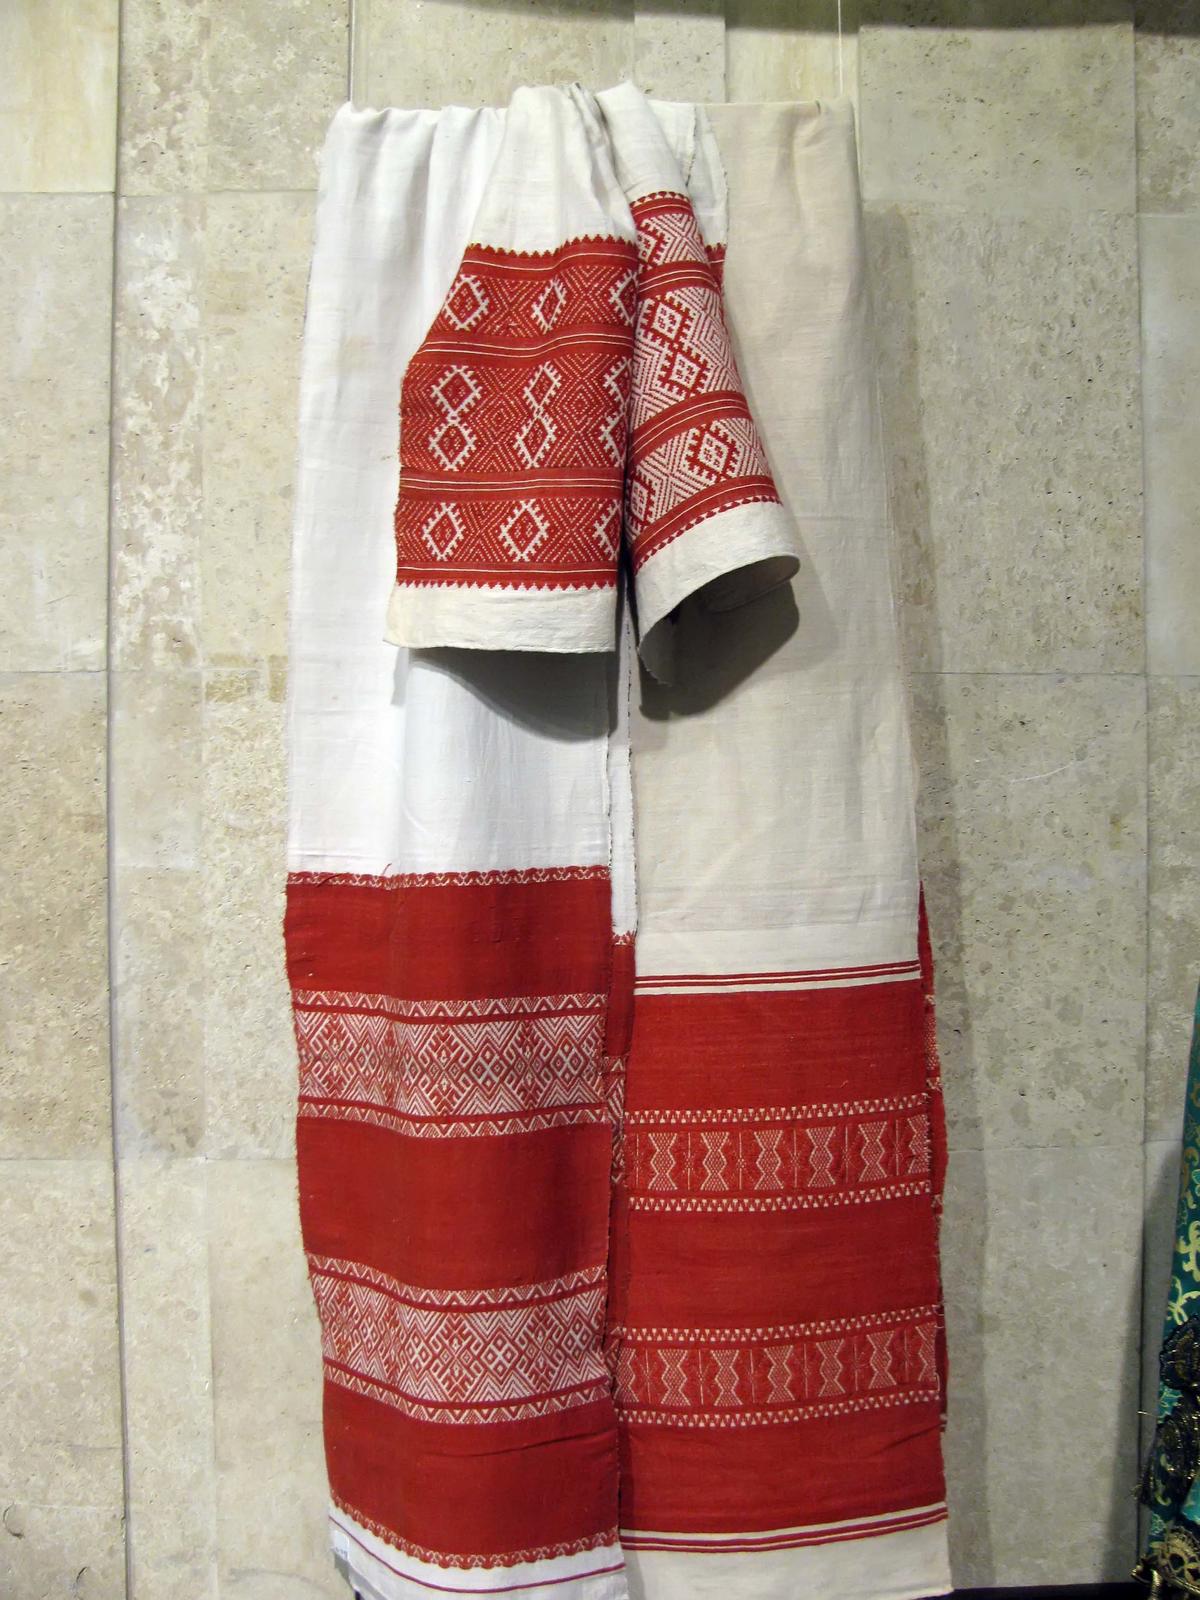 Фото №38093. Казанское полотенце